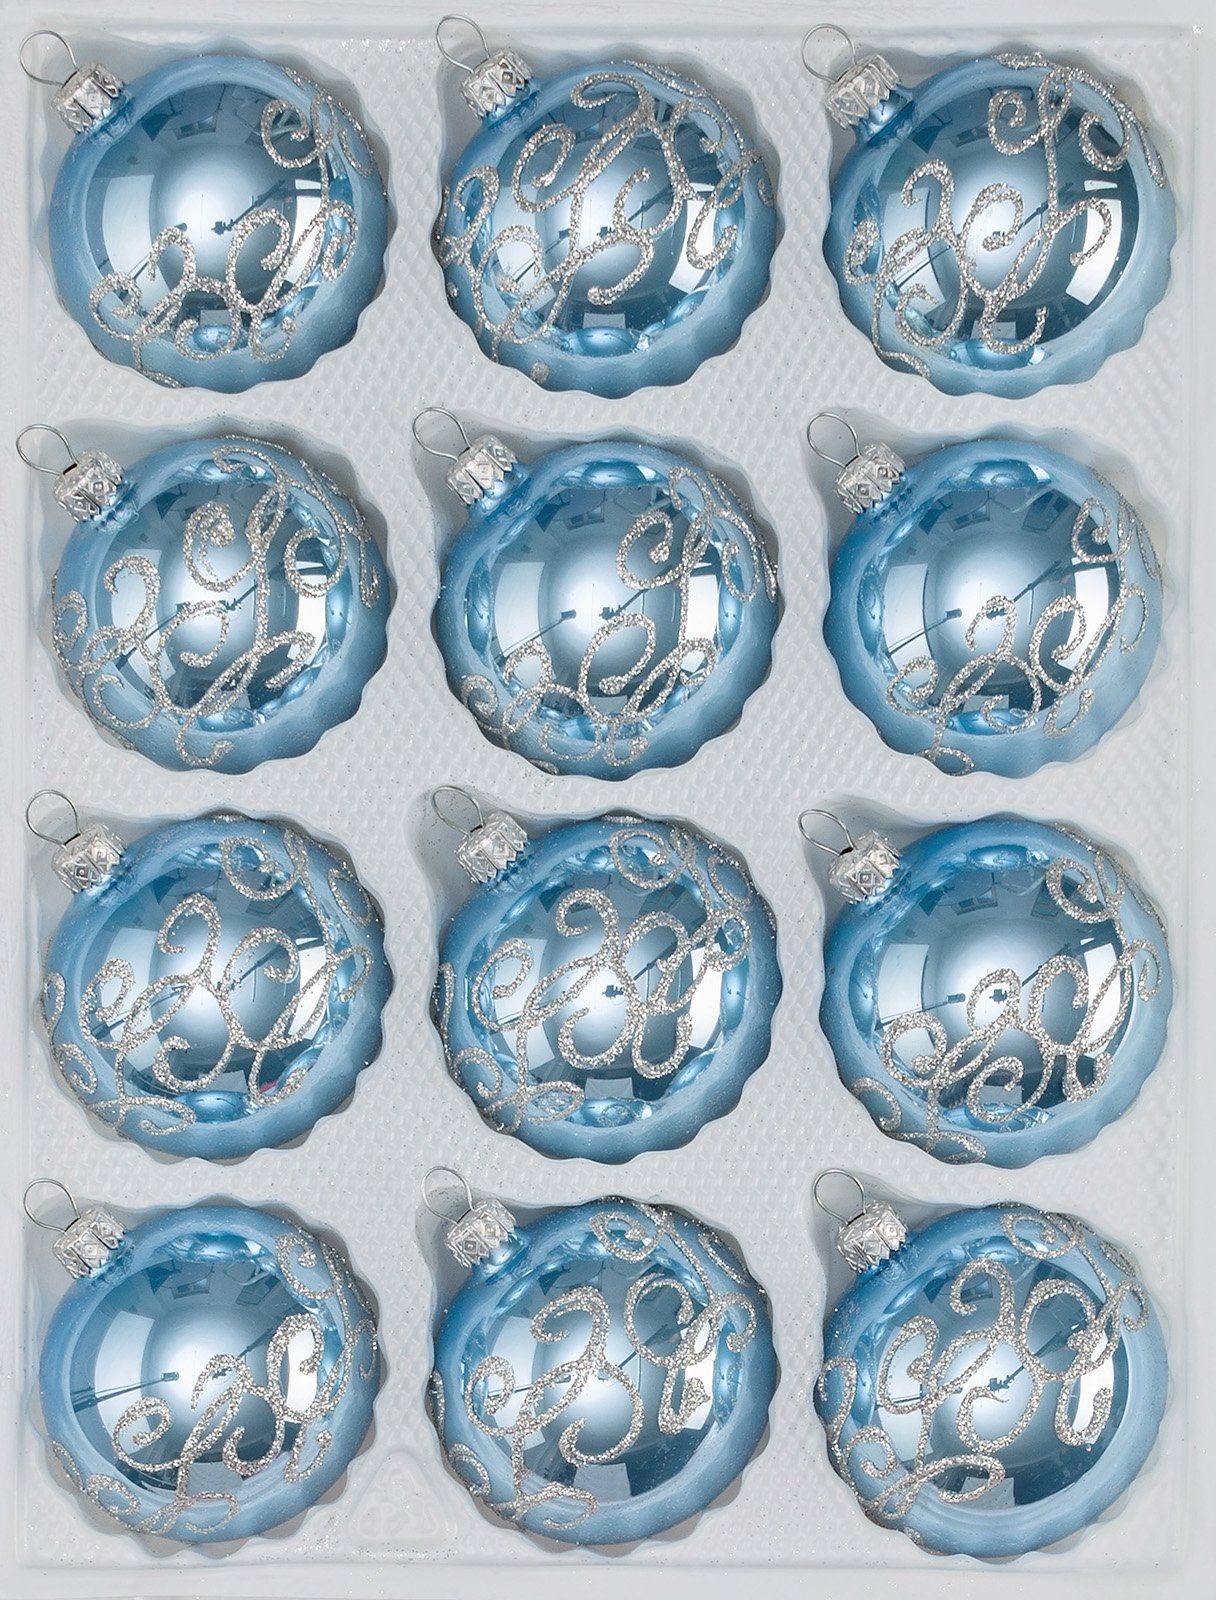 Navidacio Weihnachtsbaumkugel 12 tlg. Glas-Weihnachtskugeln Set "Hochglanz-Blau-Silberne-Ornamente“